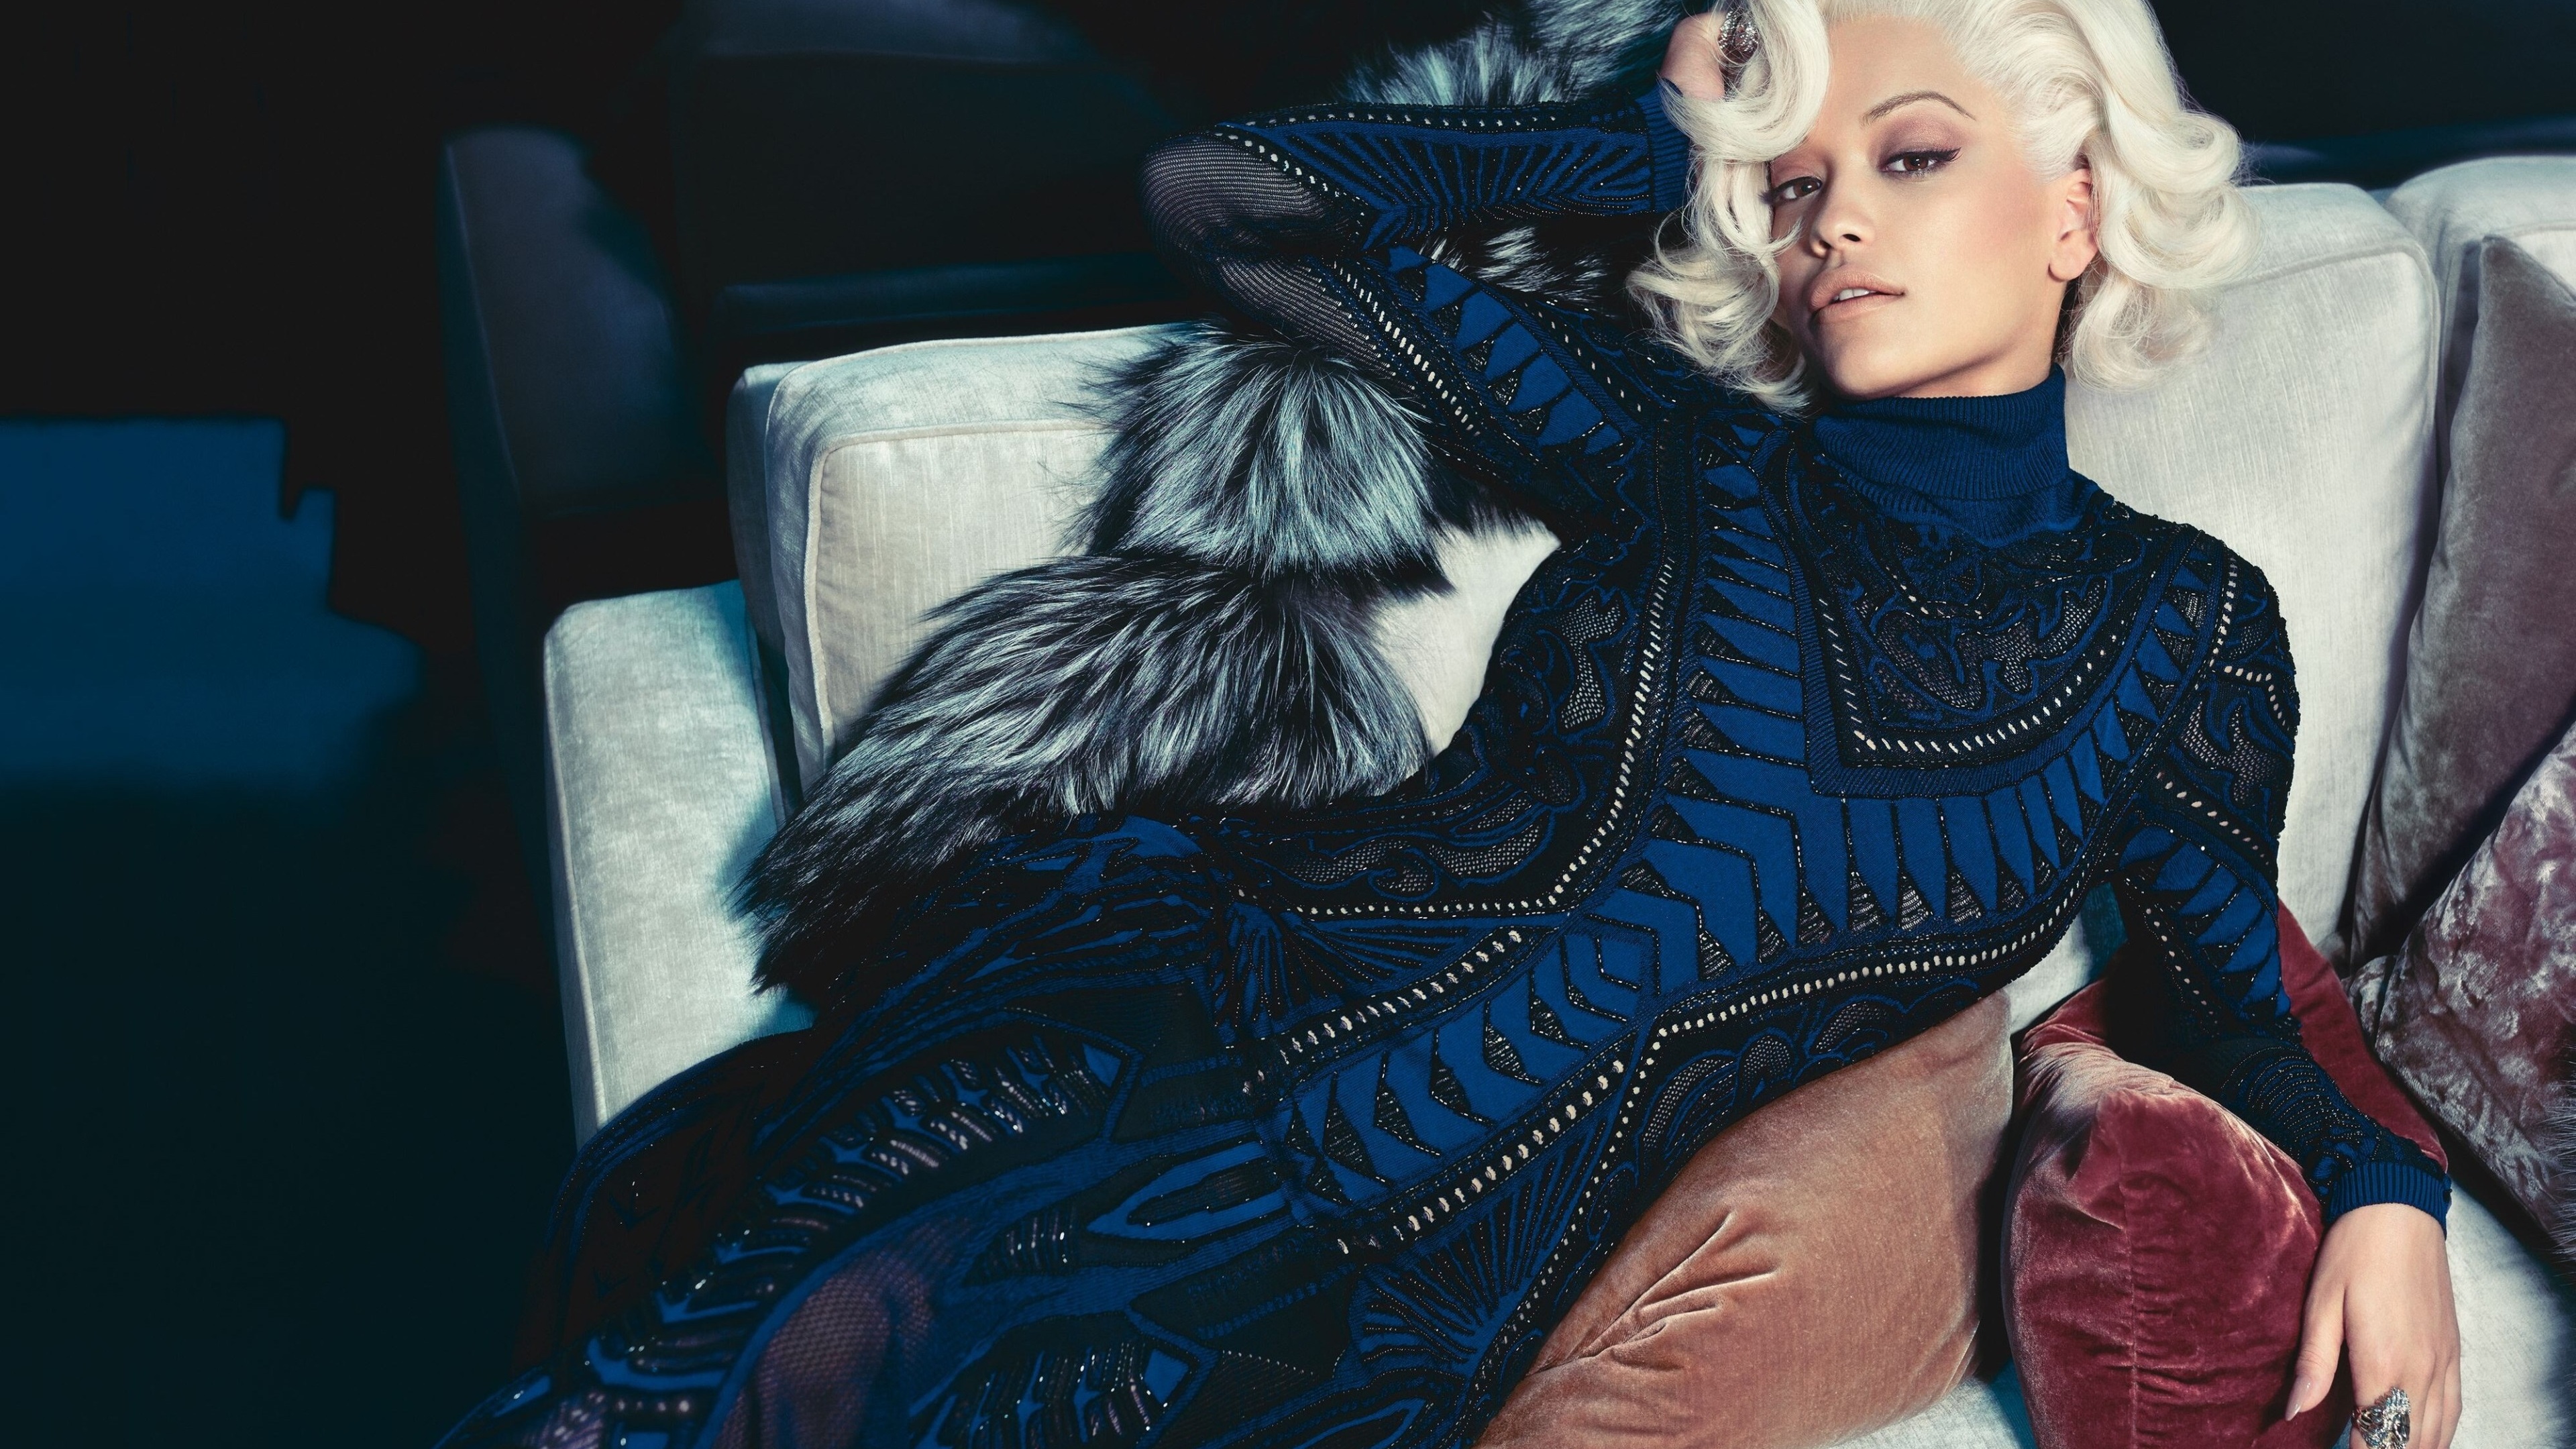 Rita Ora 2019 Wallpapers